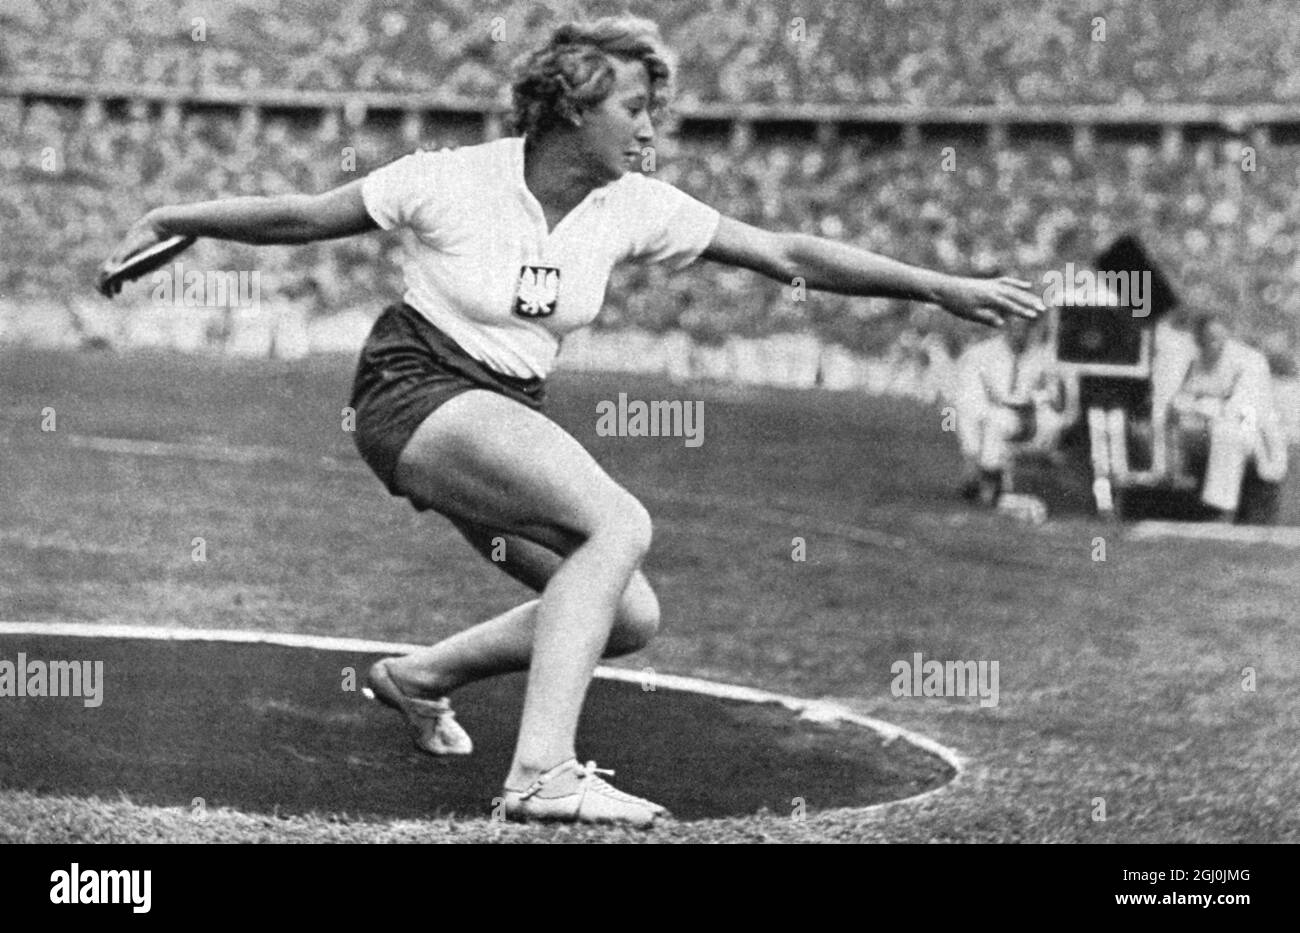 Olympische Spiele 1936, Berlin - Hedwiga Wajsowna (Polen) ist Inhaberin eines neuen olympischen Rekordes, aber Zweiter in der Gesamtwertung des Diskuswurfgeschehens. (Hedwiga Wajsowna war Nut wenige Minuten lang in eines neuen olympischen Rekordes.) ©TopFoto Stockfoto